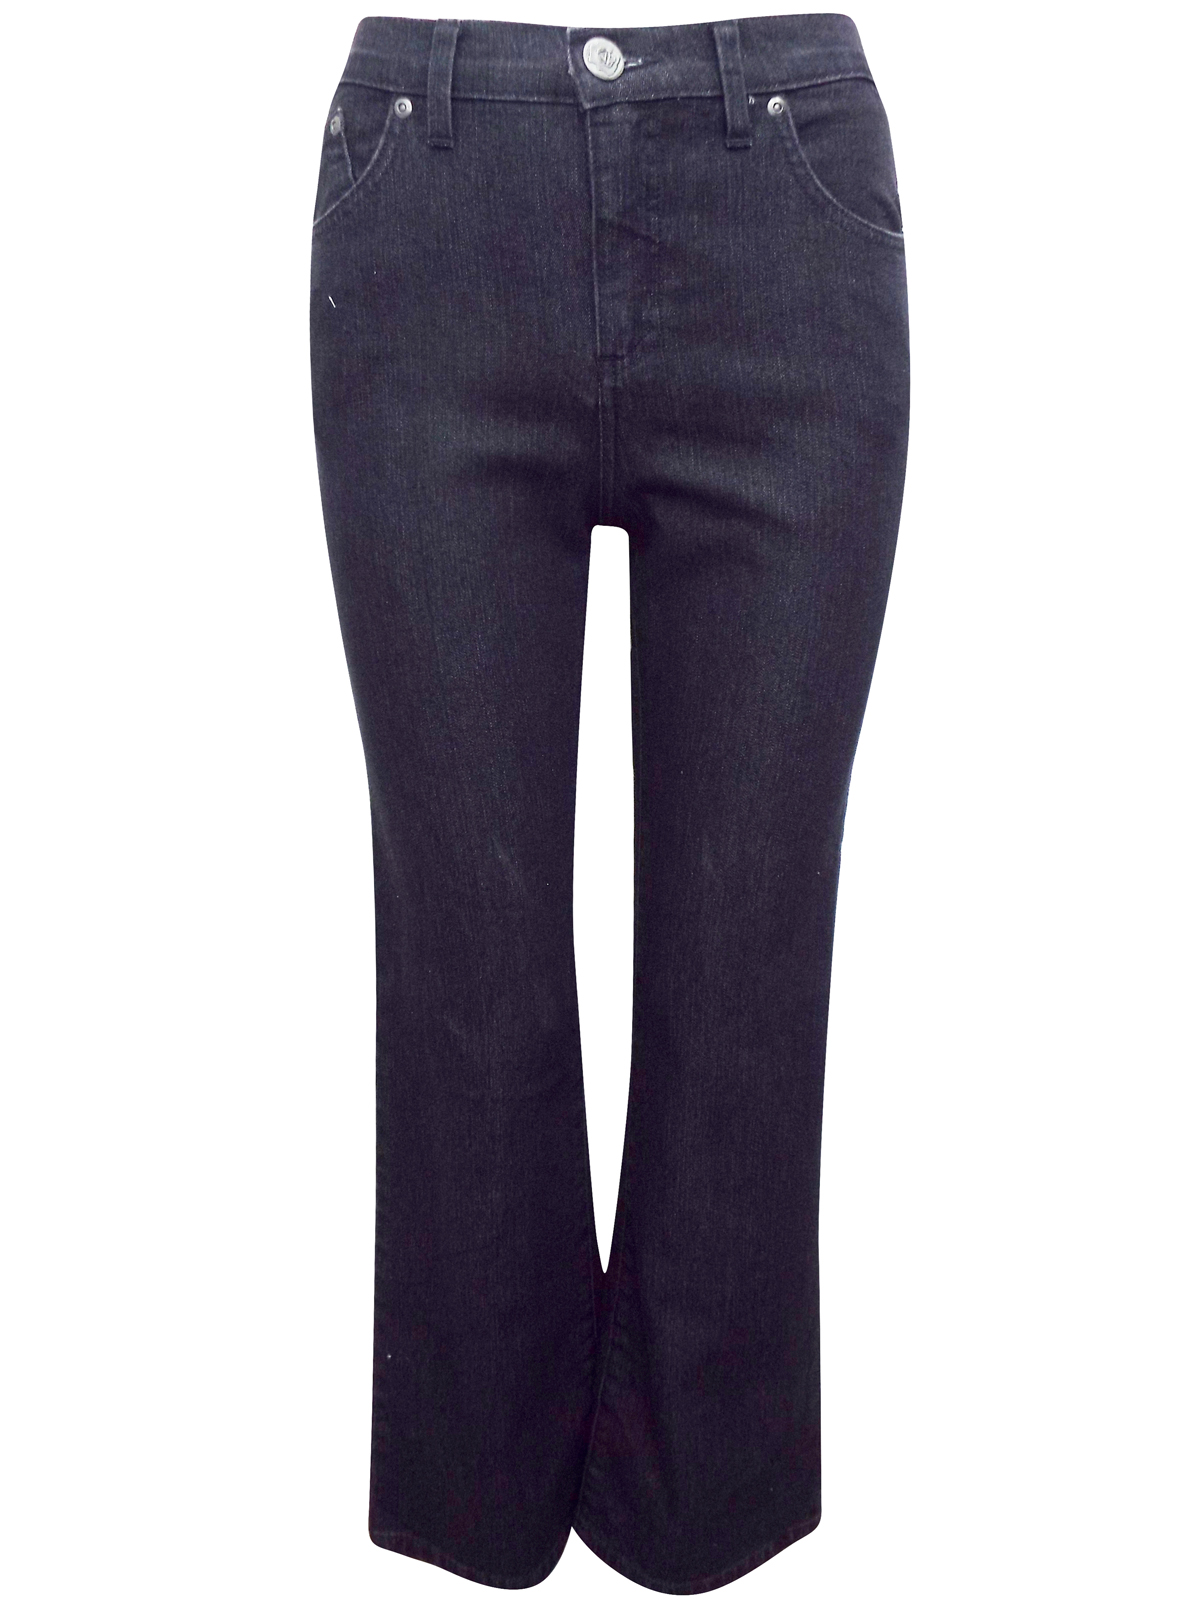 P3rUna BLACK Cotton Rich Bootleg Denim Jeans - Size 8 to 12